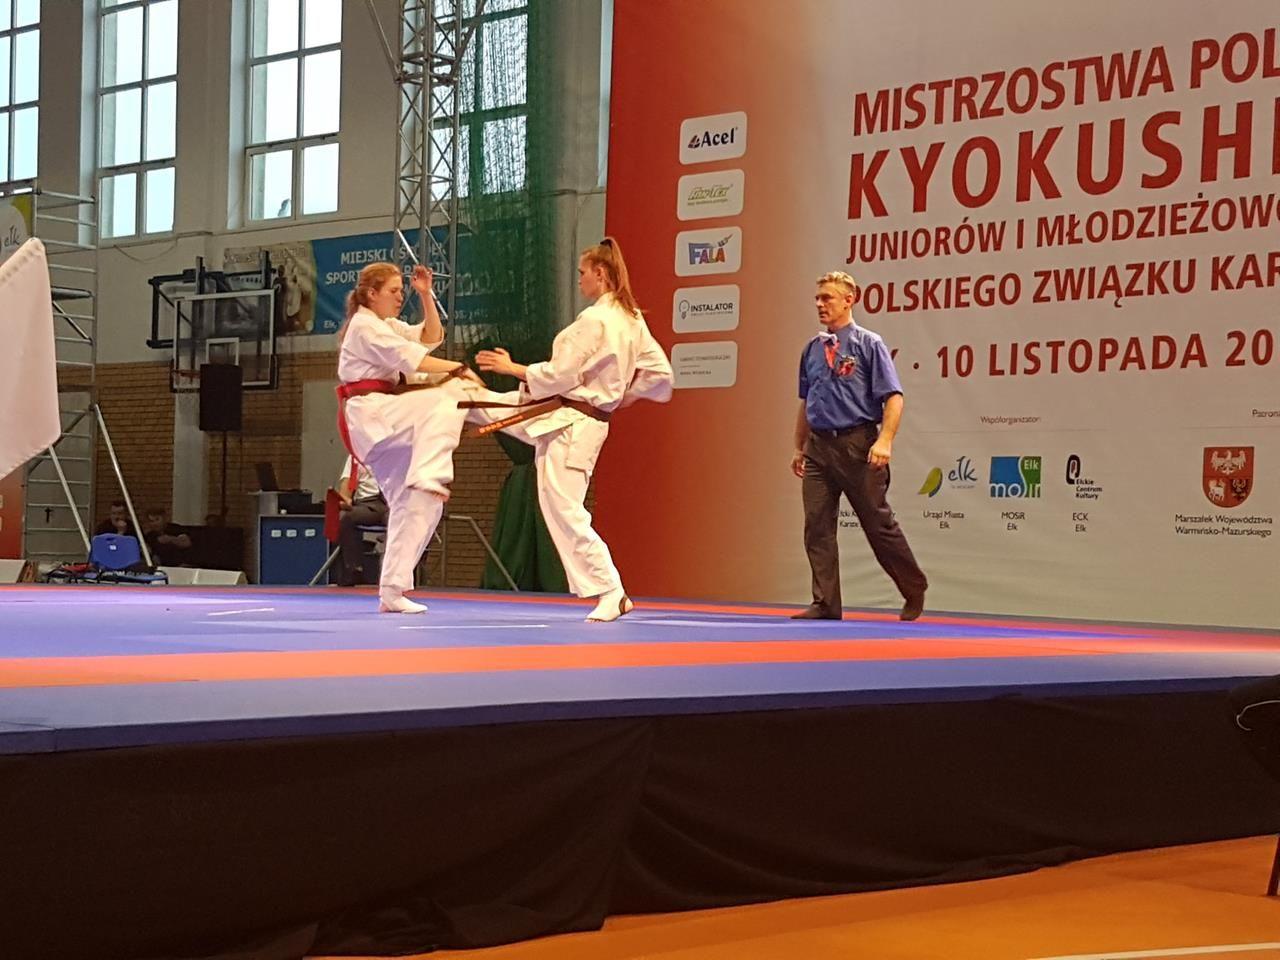 Zdj. nr. 4. Mistrzostwa Polski z medalami